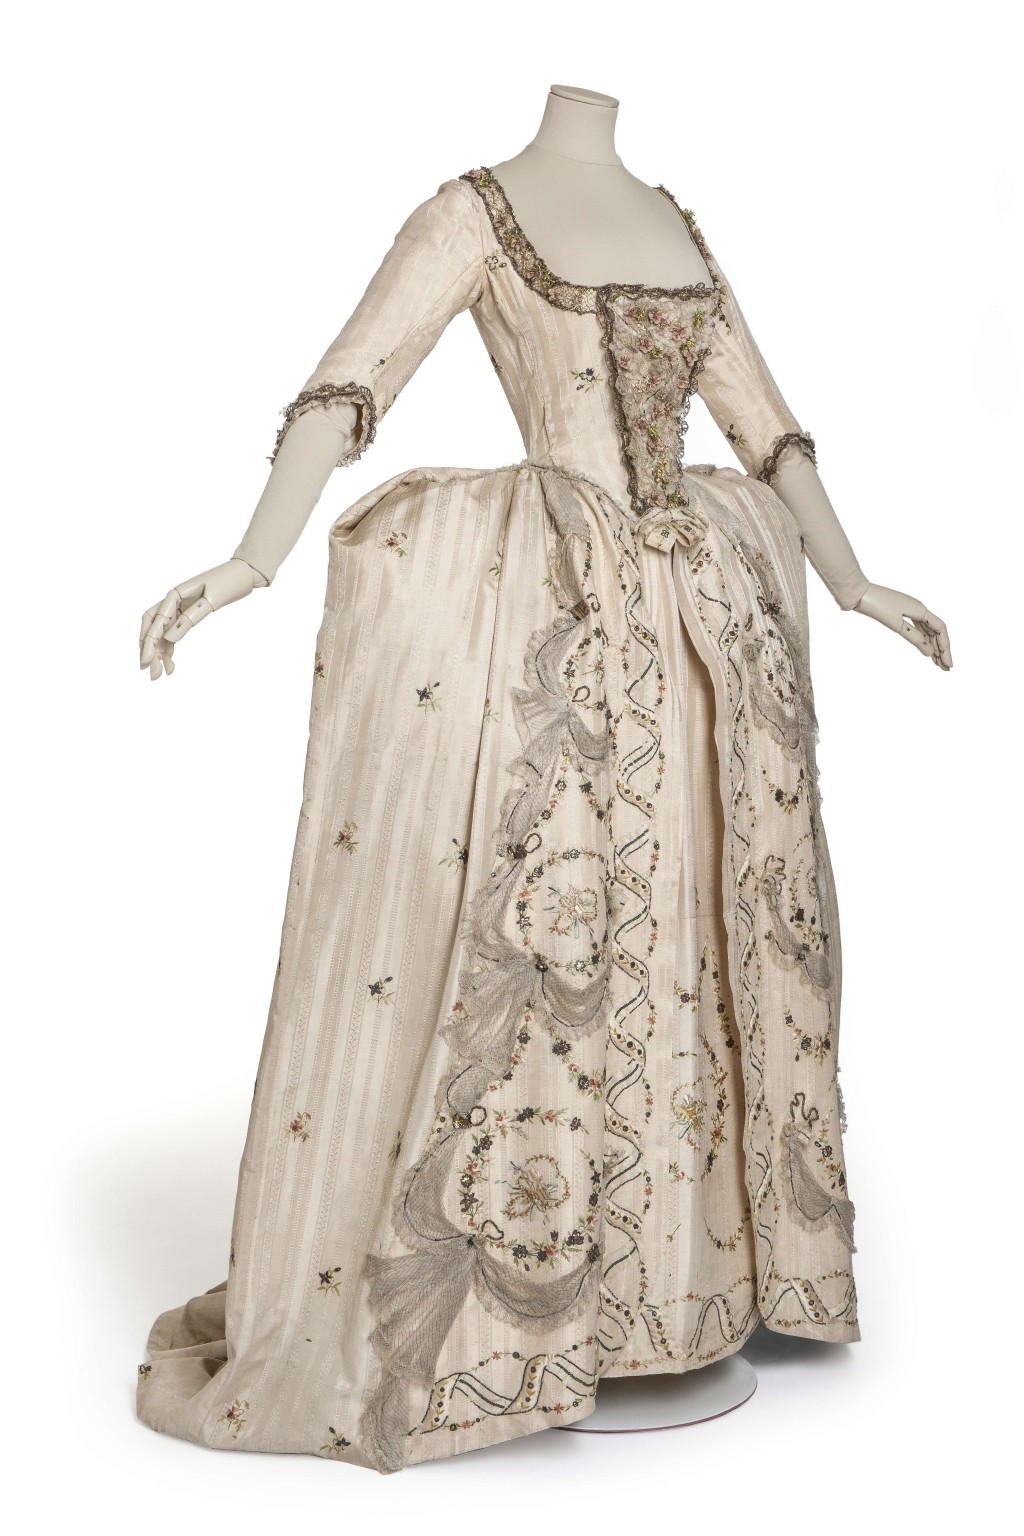 宫廷礼服(礼服外袍、长裙、三角胸衣)© 巴黎装饰 艺术博物馆 / 摄影:尚 · 托朗斯